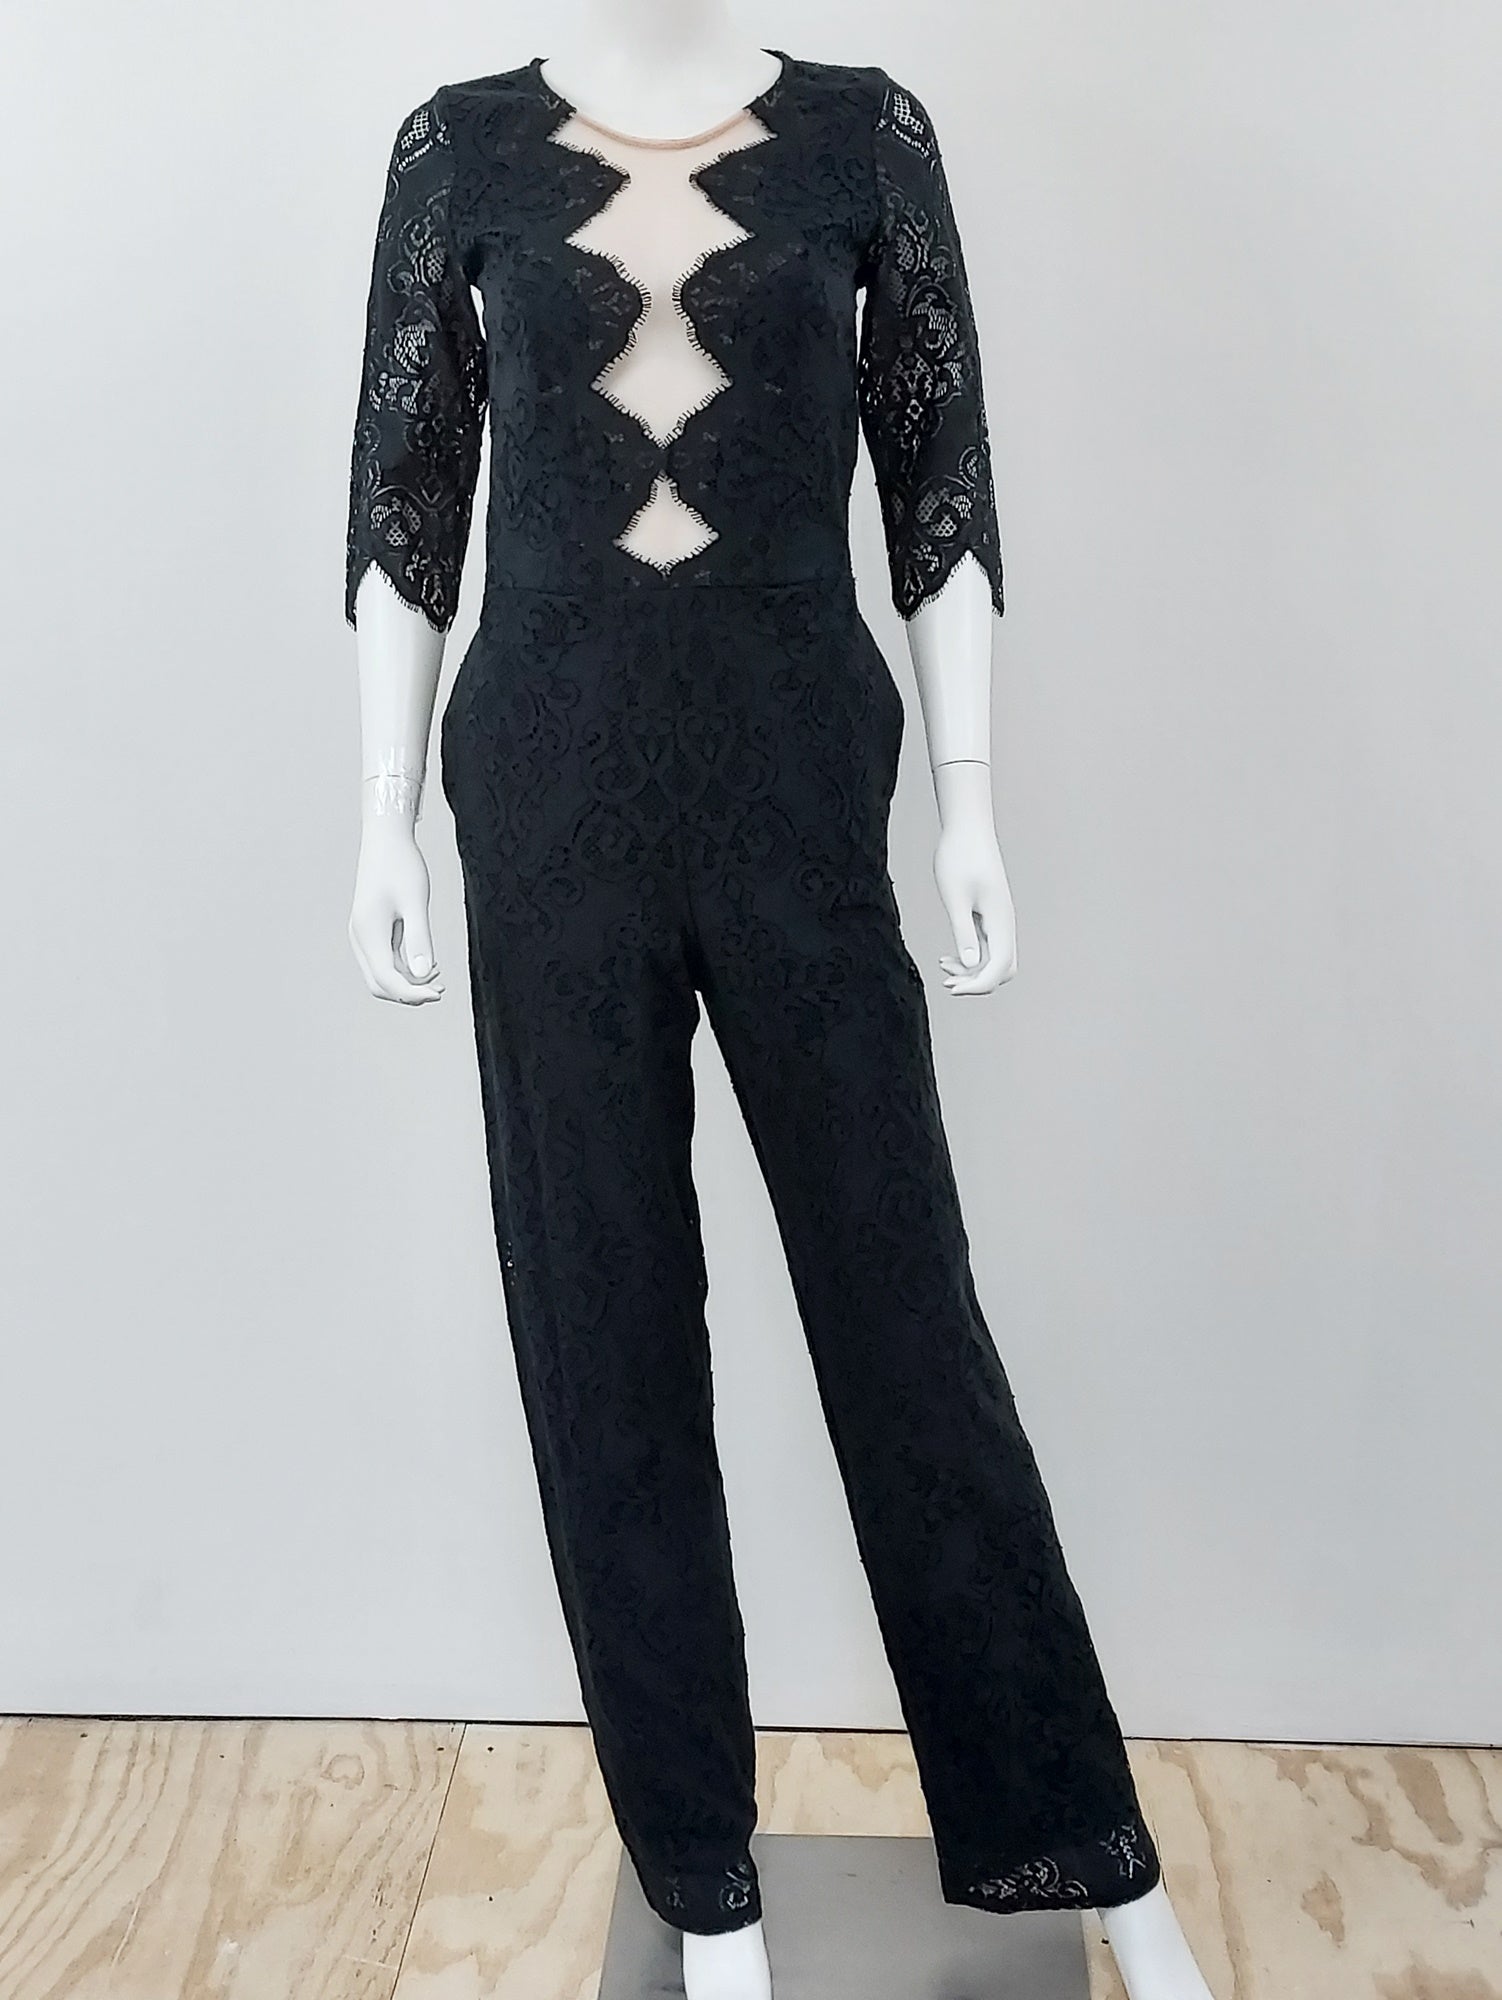 Noir Black Lace Jumpsuit Size Medium